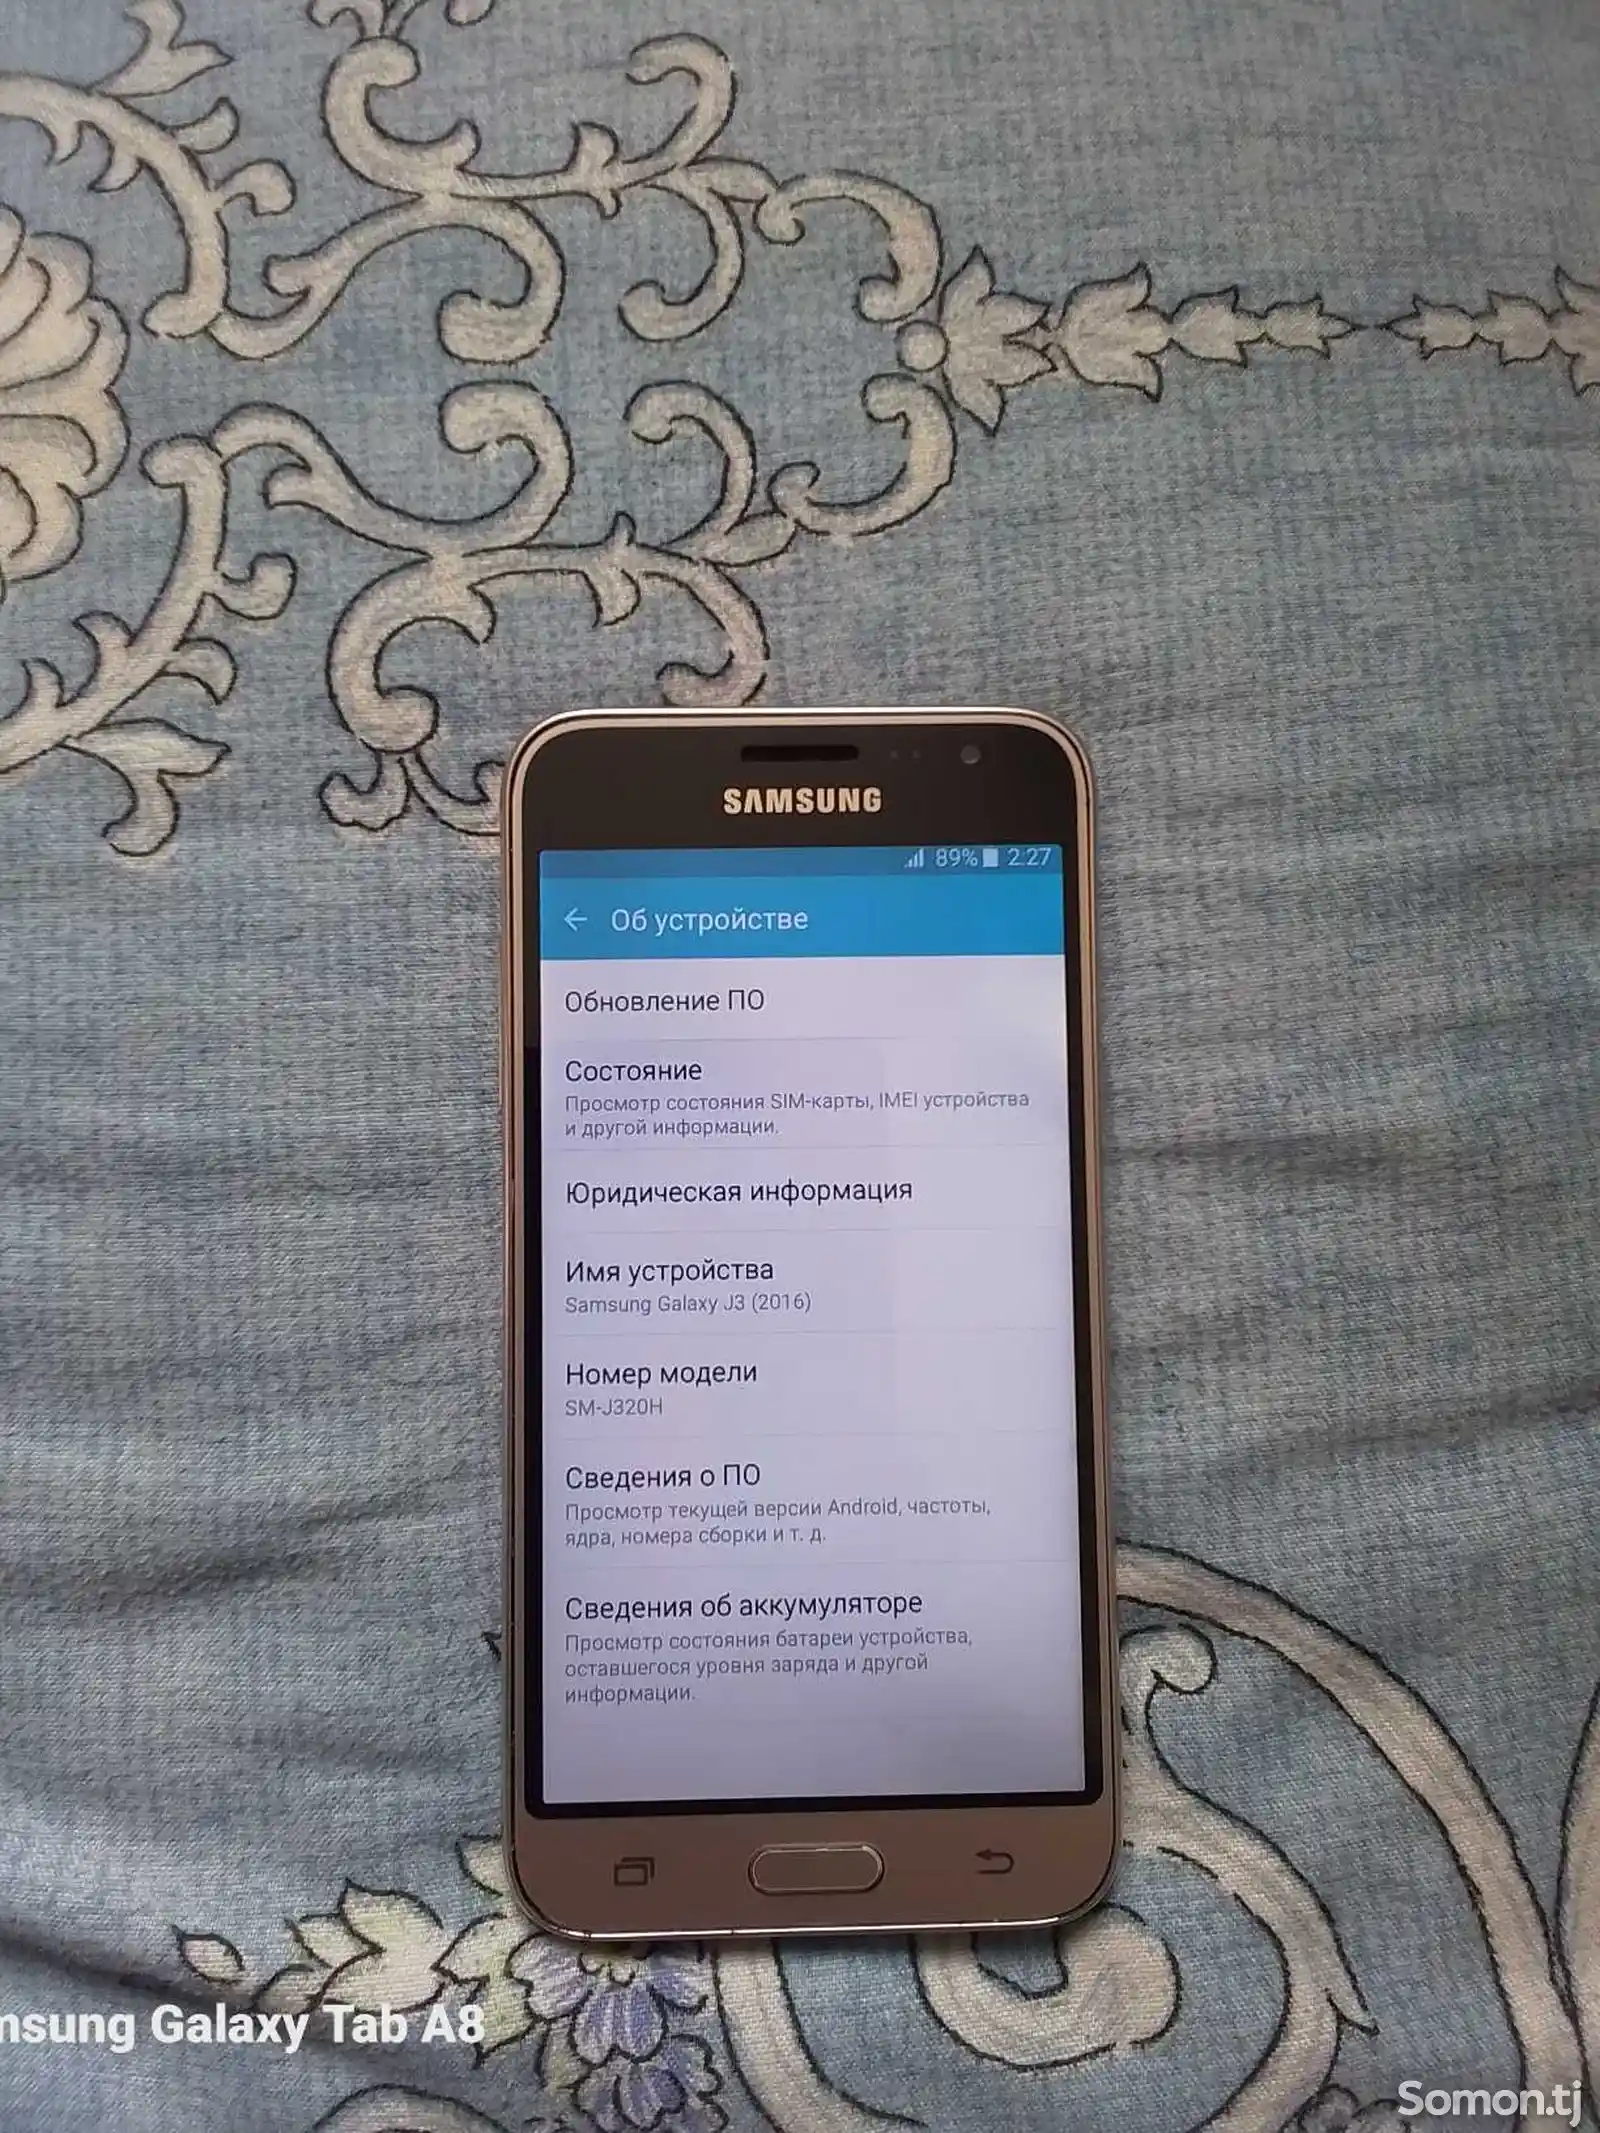 Samsung Galaxy J3 Duos, 8gb-4